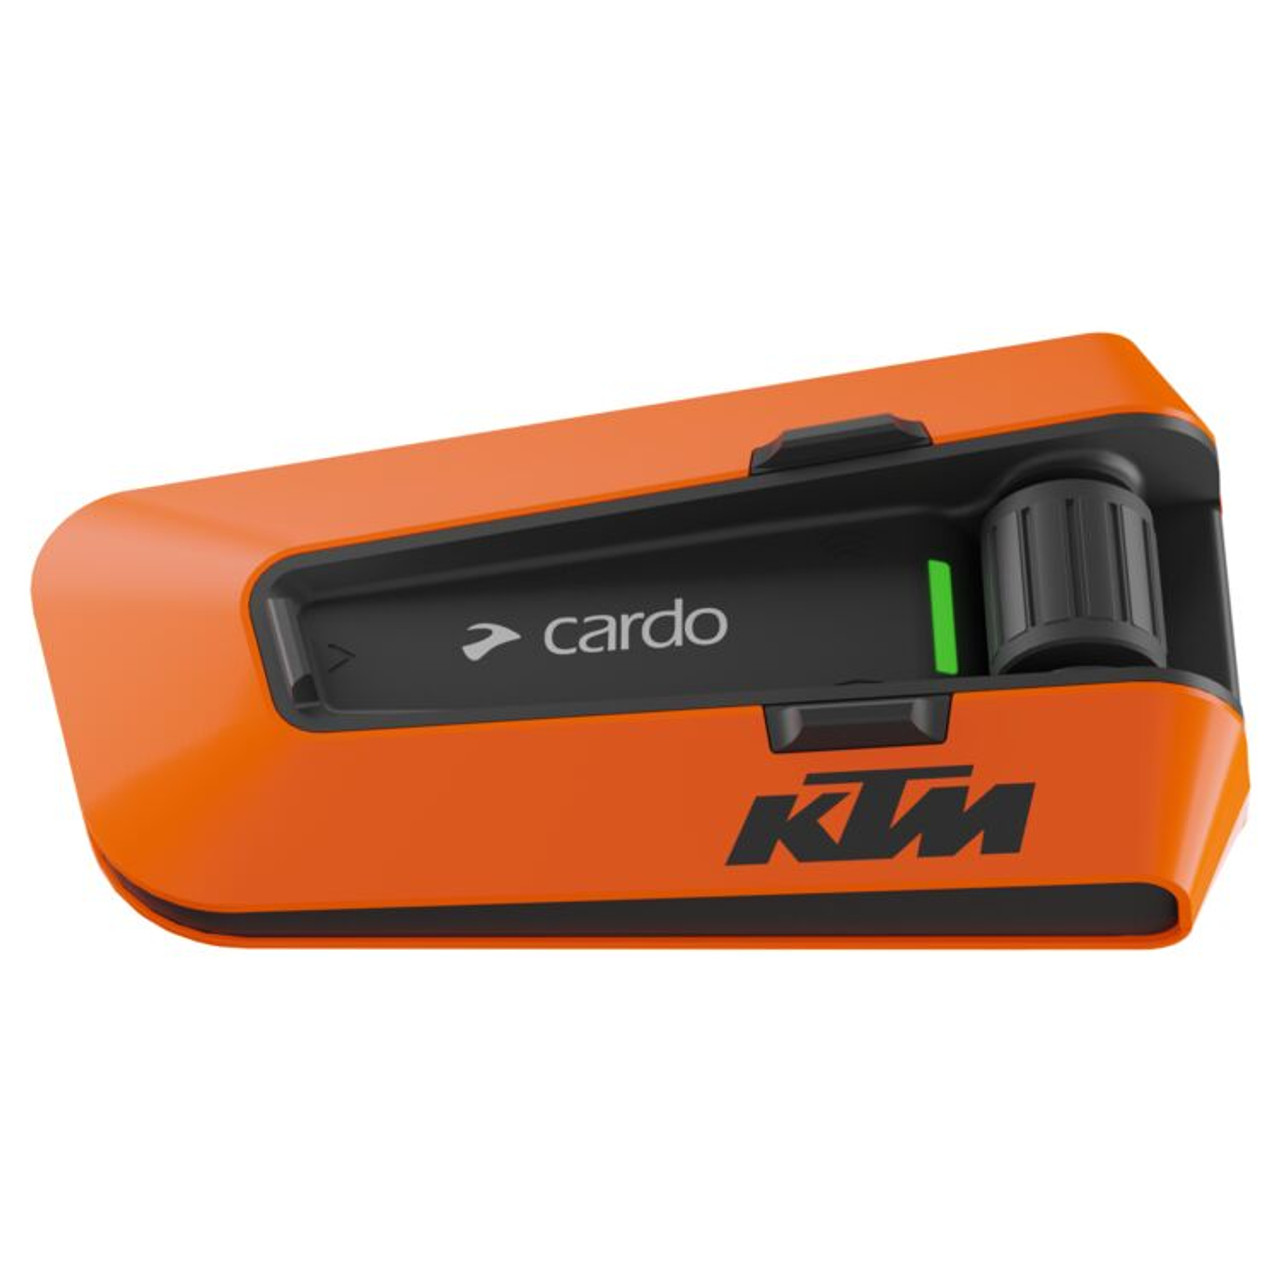 Cardo Freecom 2X Bluetooth Headset Review at SpeedAddicts.com 